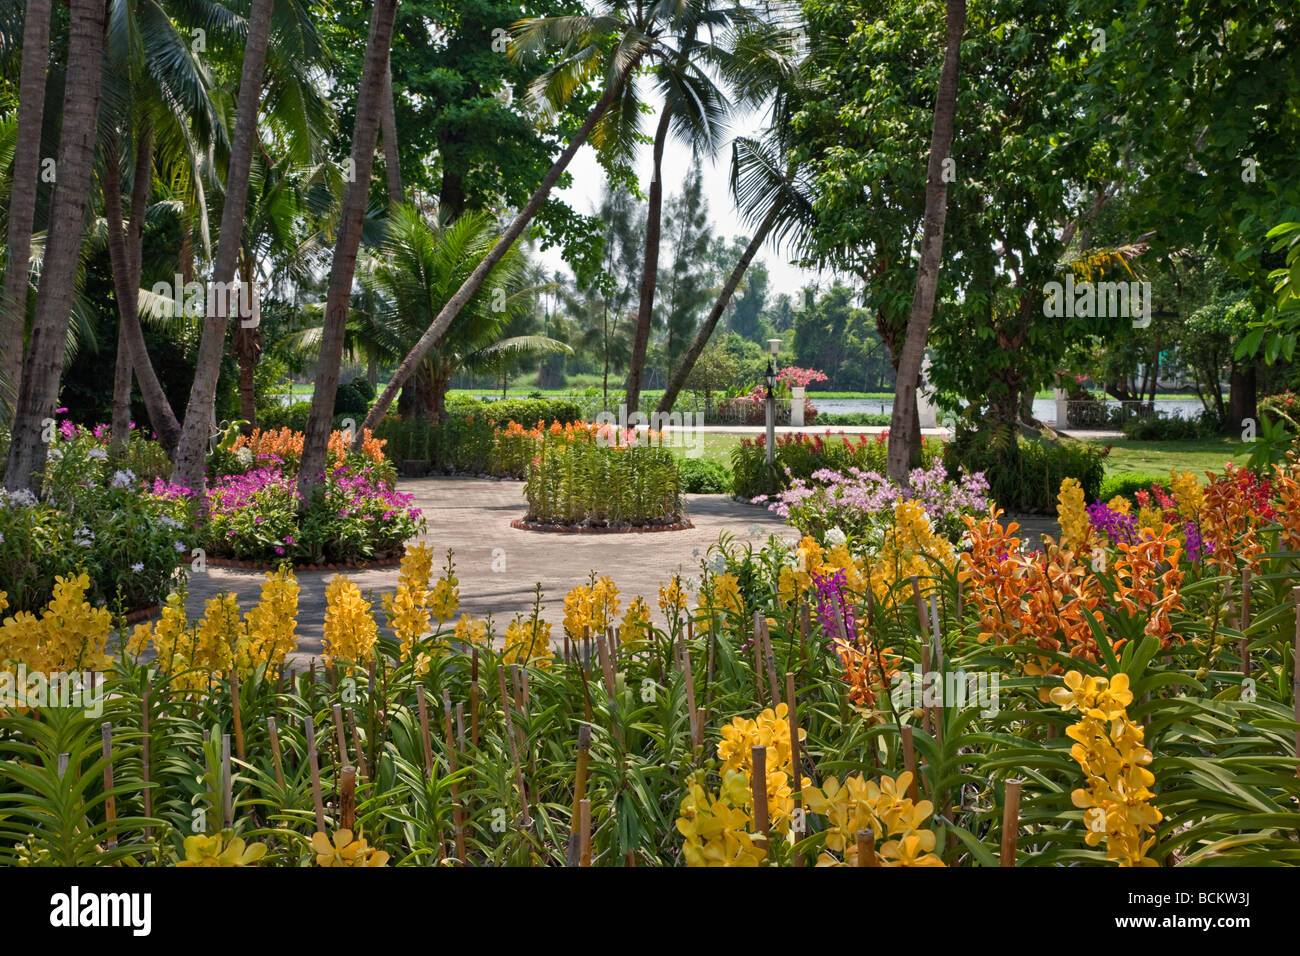 Tailandia. Una magnífica exposición de orquídeas en el jardín de rosas un complejo turístico establecido en 75 acres de exuberantes jardines. Foto de stock